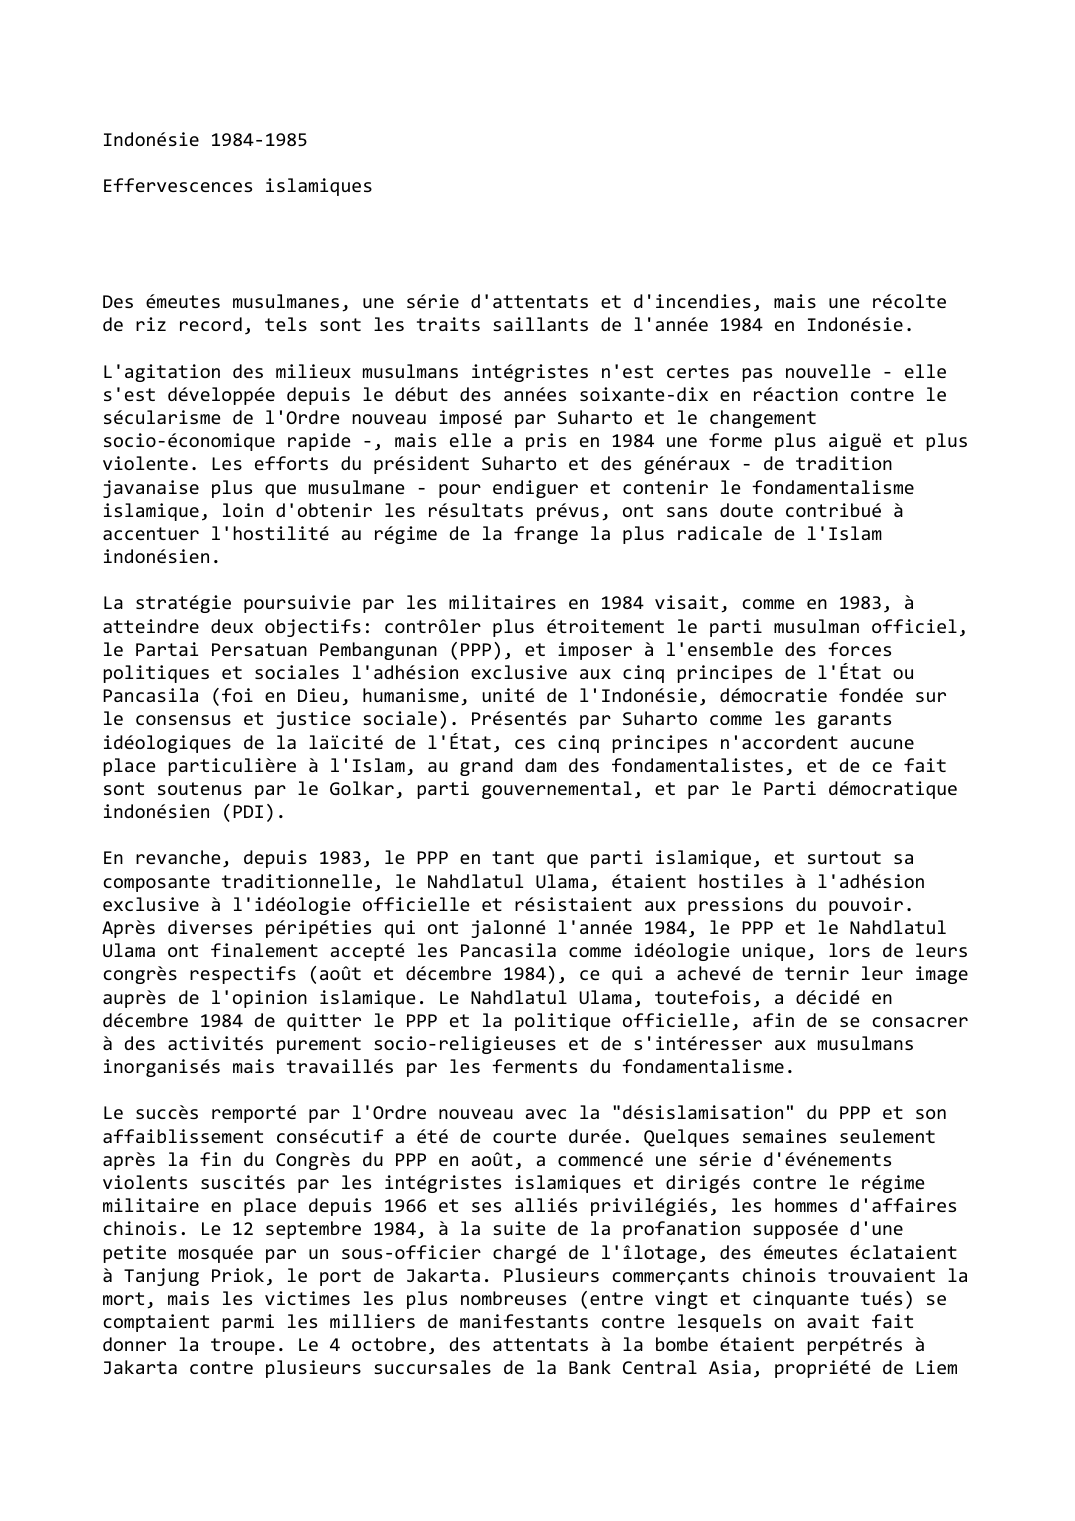 Prévisualisation du document Indonésie (1984-1985)

Effervescences islamiques